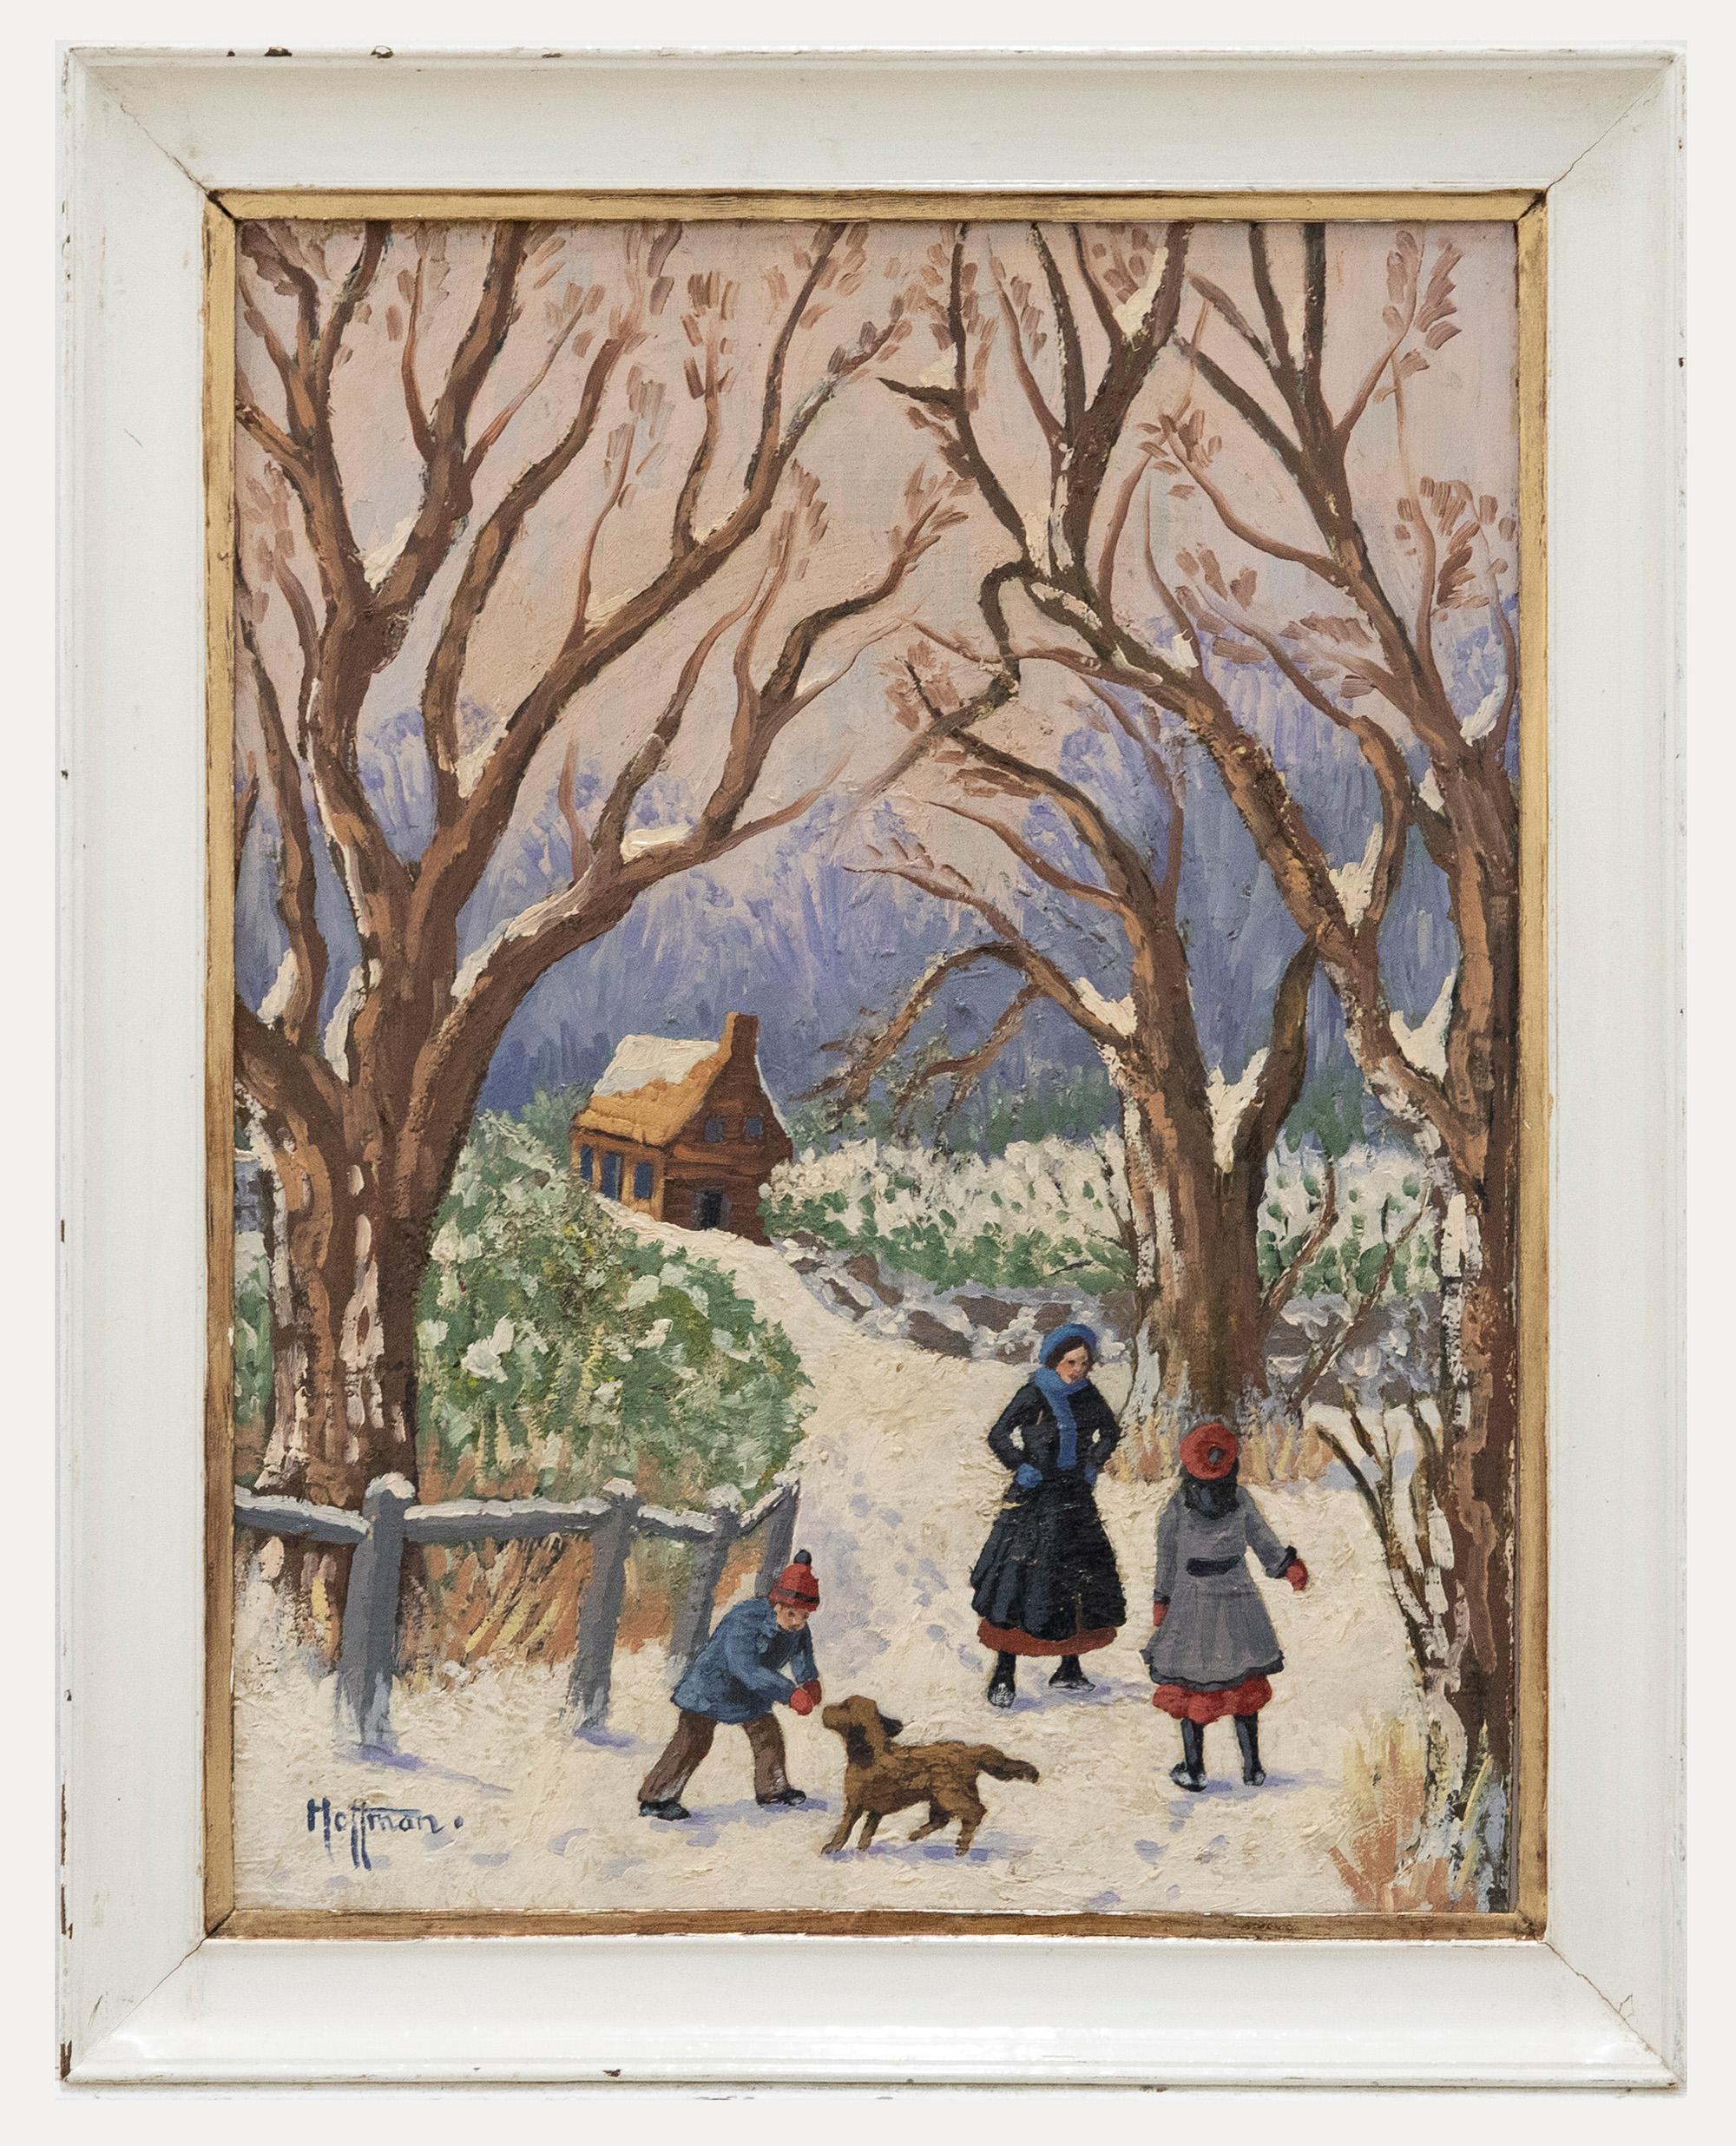 Charmante scène à l'huile du début du 20e siècle montrant une mère et deux enfants jouant dans la neige avec leur chien, avec une petite maison en bois au loin. L'artiste a signé dans le coin inférieur gauche et le tableau a été présenté dans un